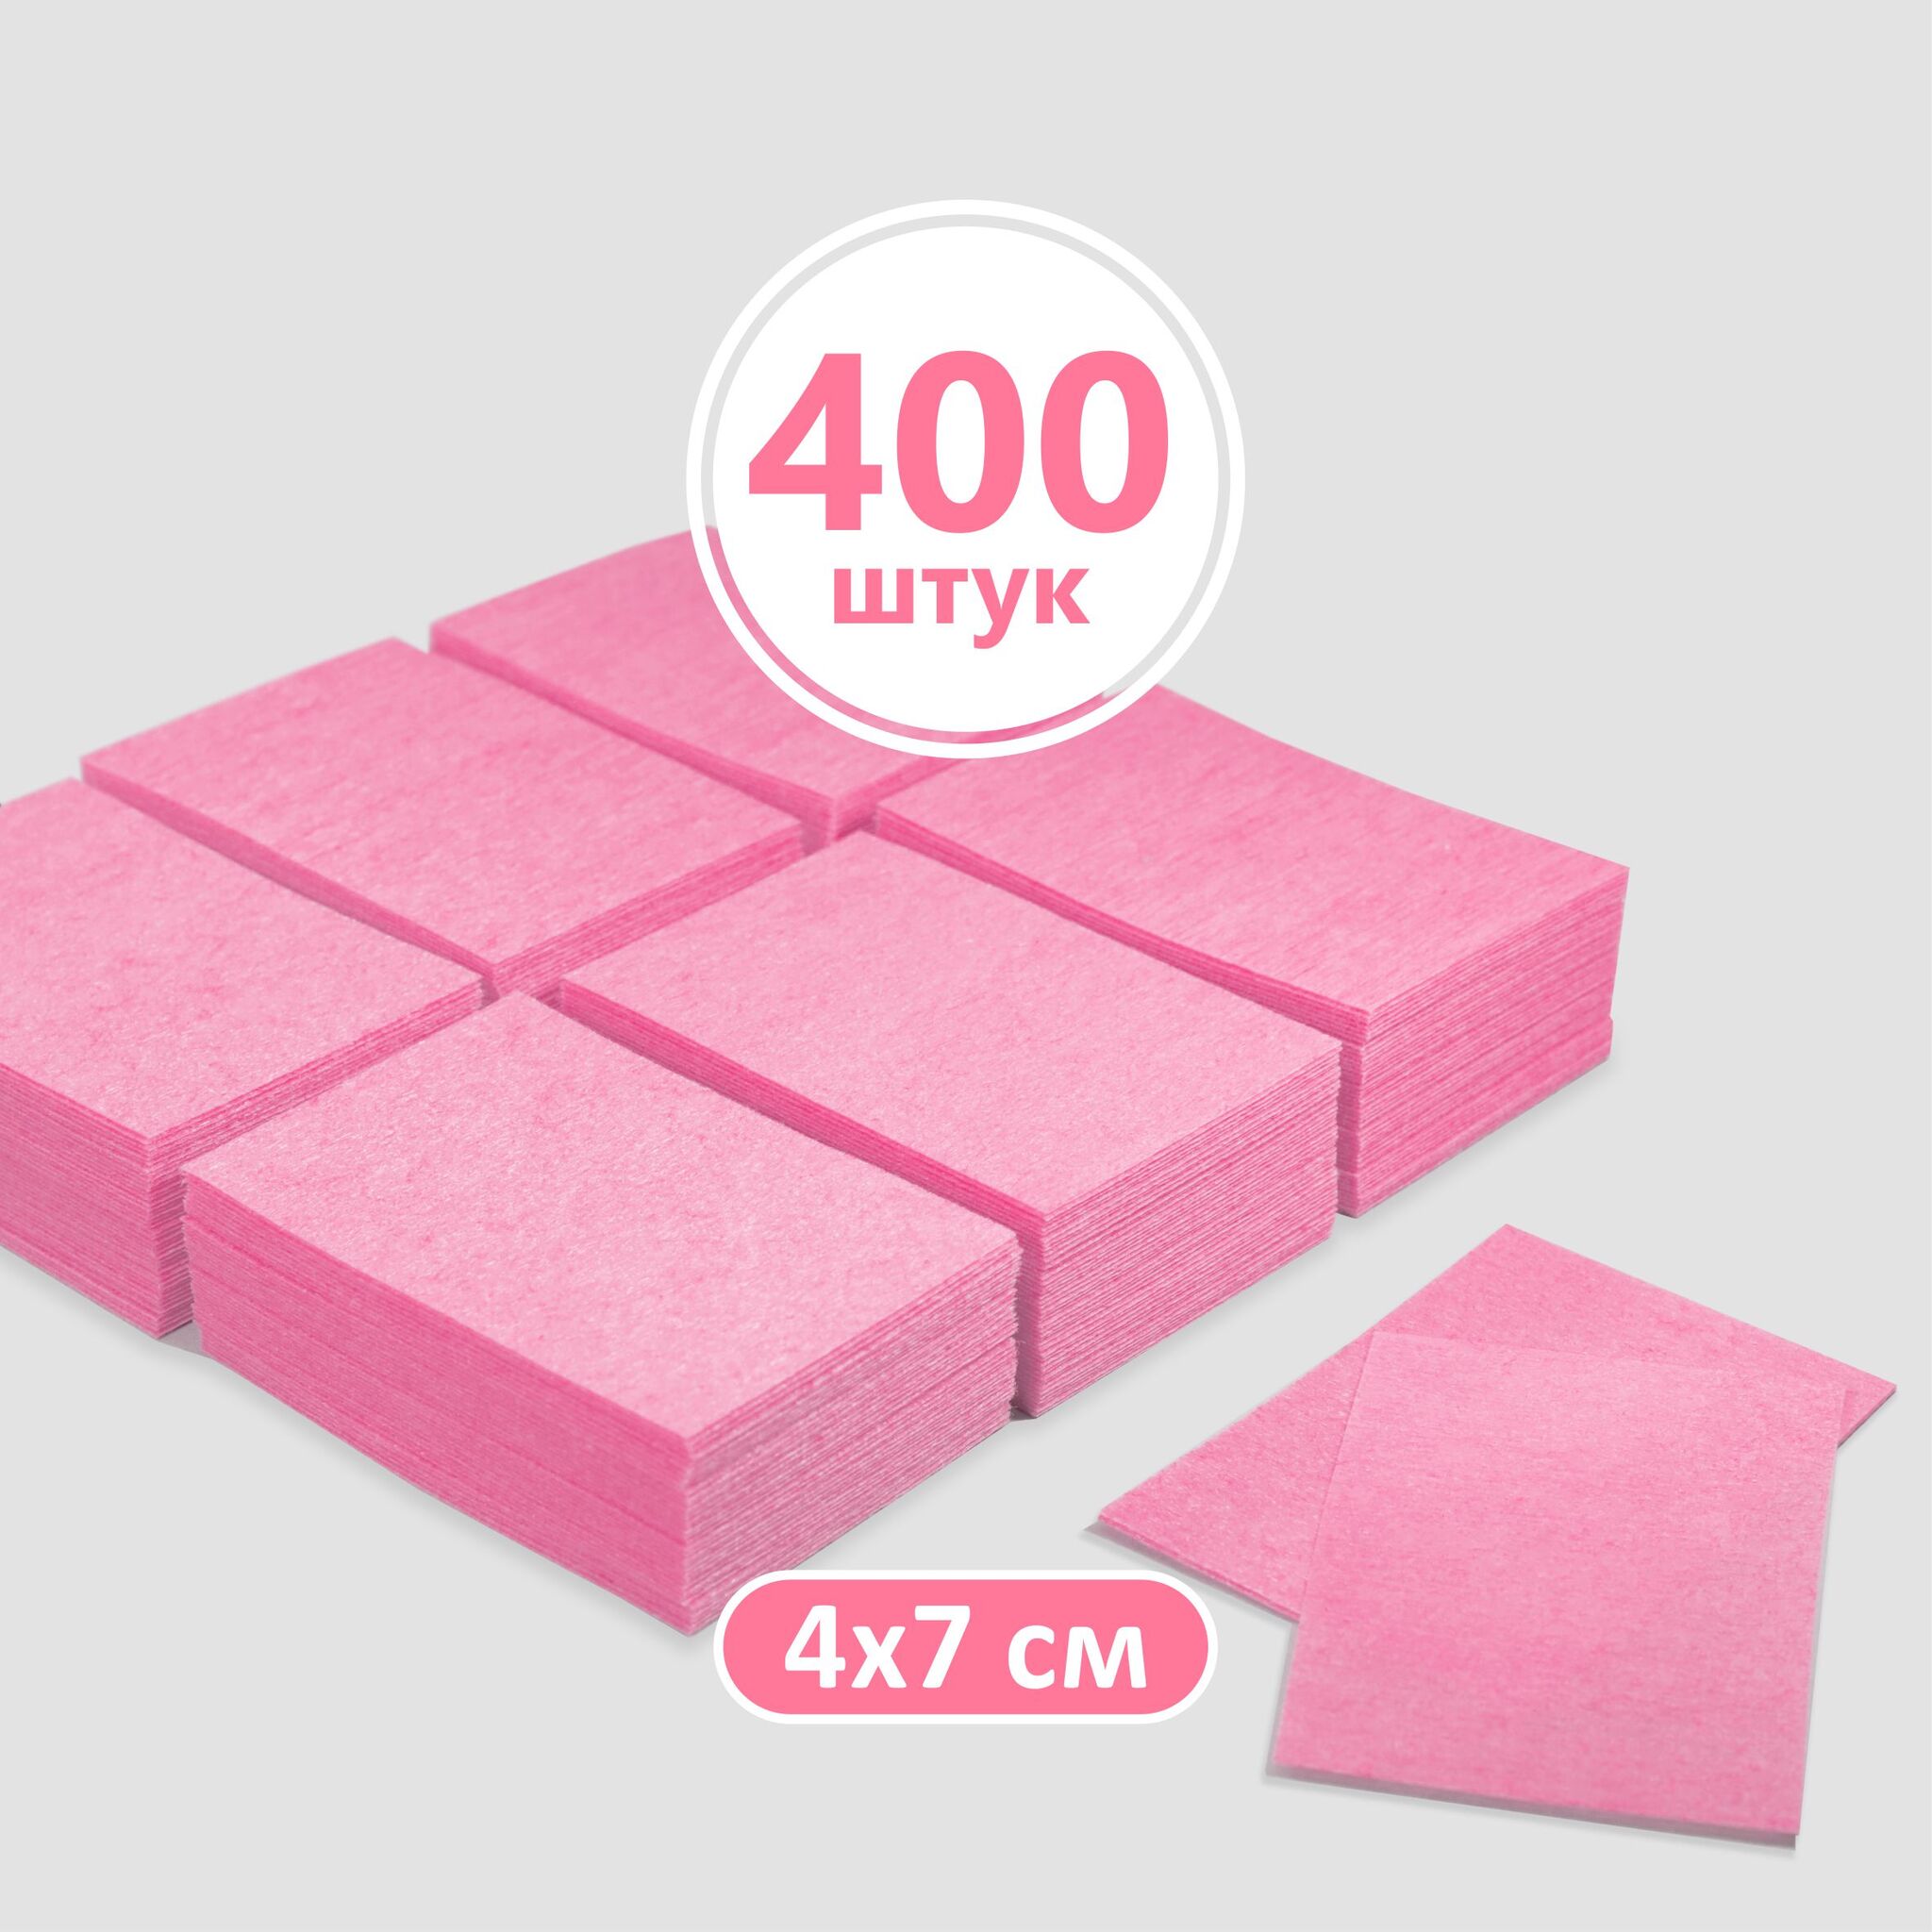 Безворсовые салфетки (цвет розовый), 400шт. -  по выгодной цене .